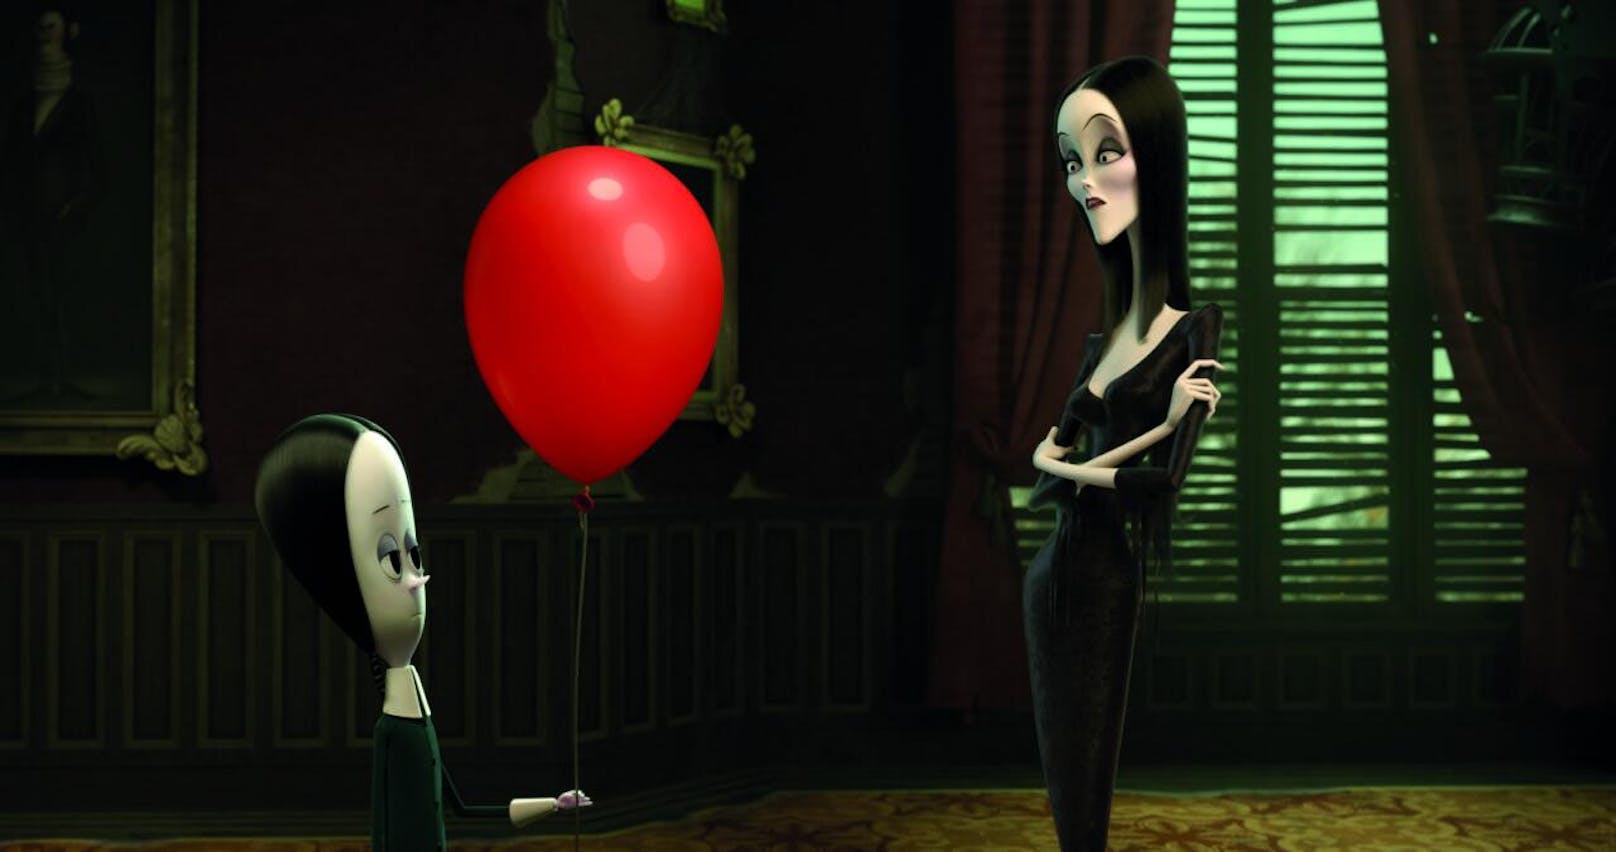 Wednesday findet einen roten Ballon. Morticia wundert sich, dass kein böser Clown, der kleine Kinder killt, am anderen Ende hängt.